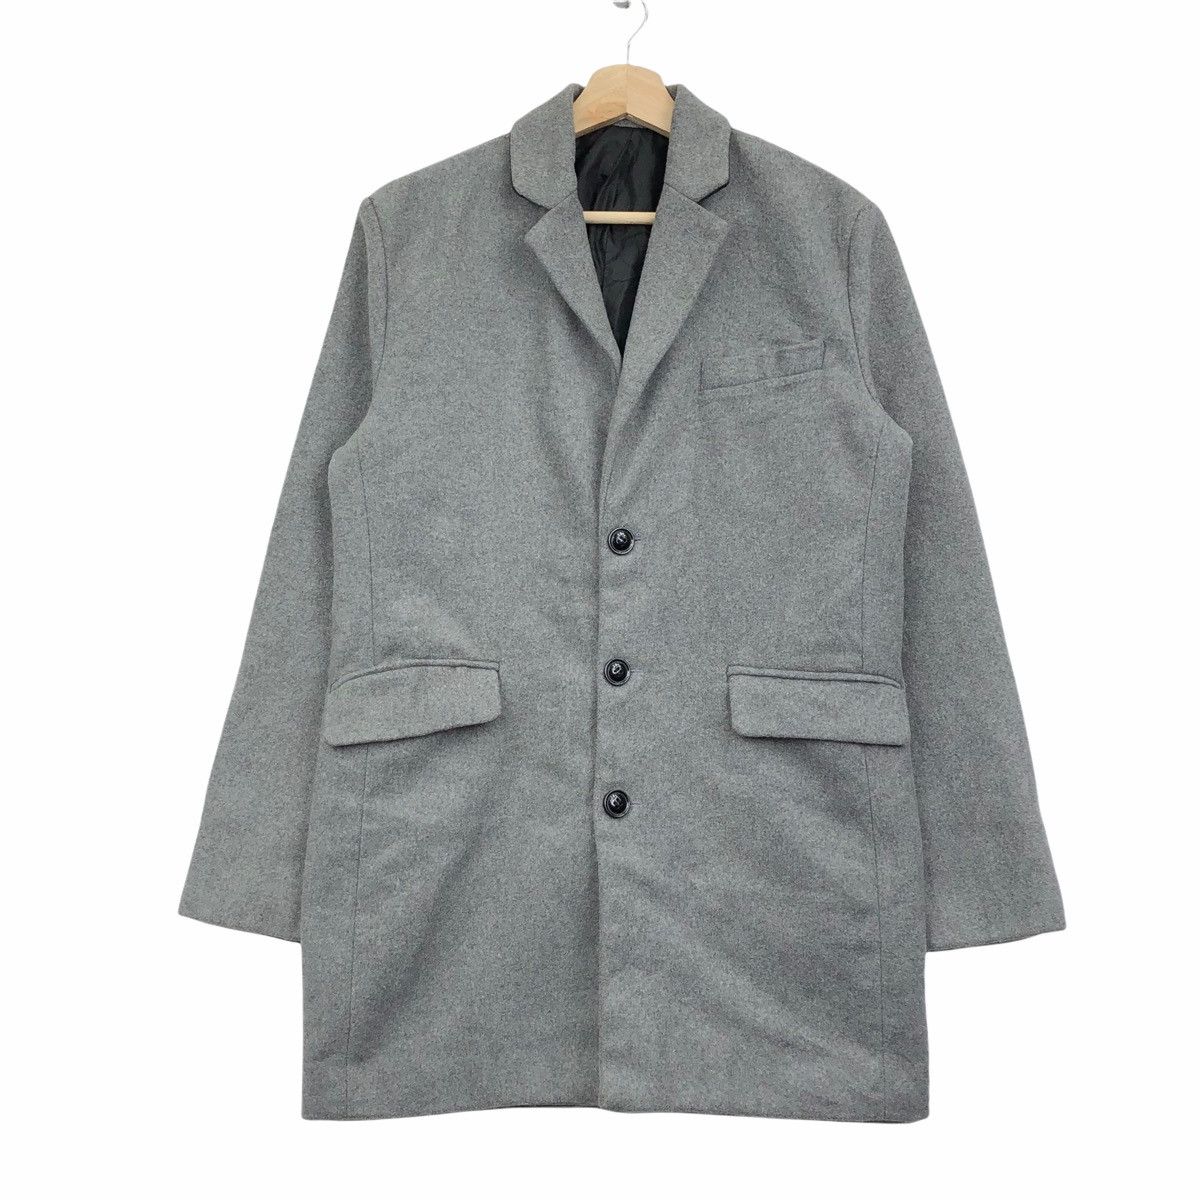 Japanese Brand Japanese Brand Roshell Blazer Coat Jacket | Grailed